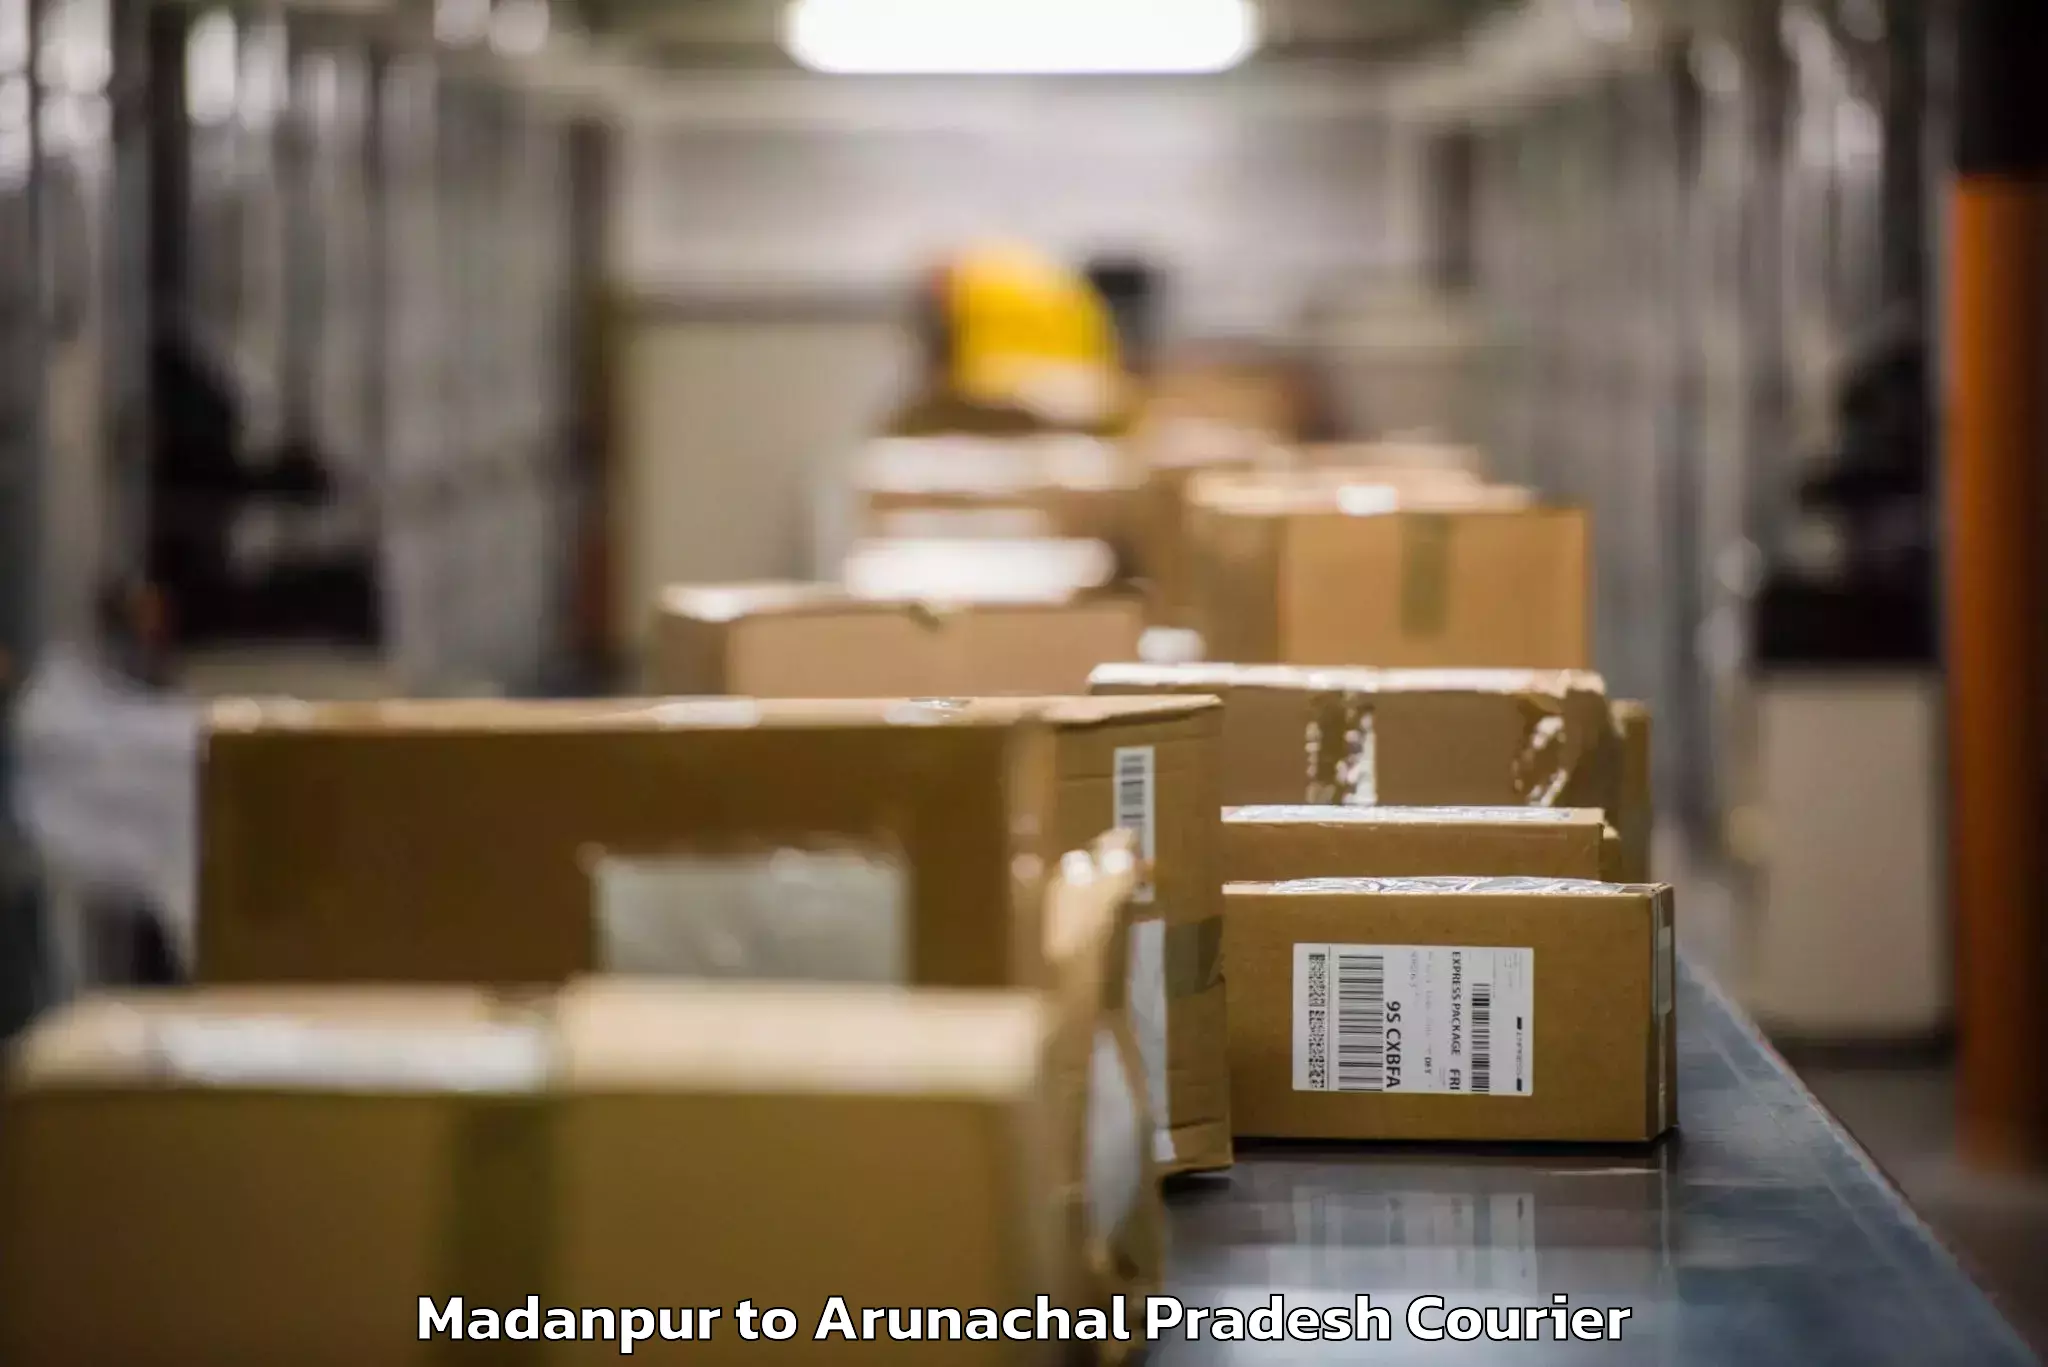 Baggage transport coordination Madanpur to Arunachal Pradesh